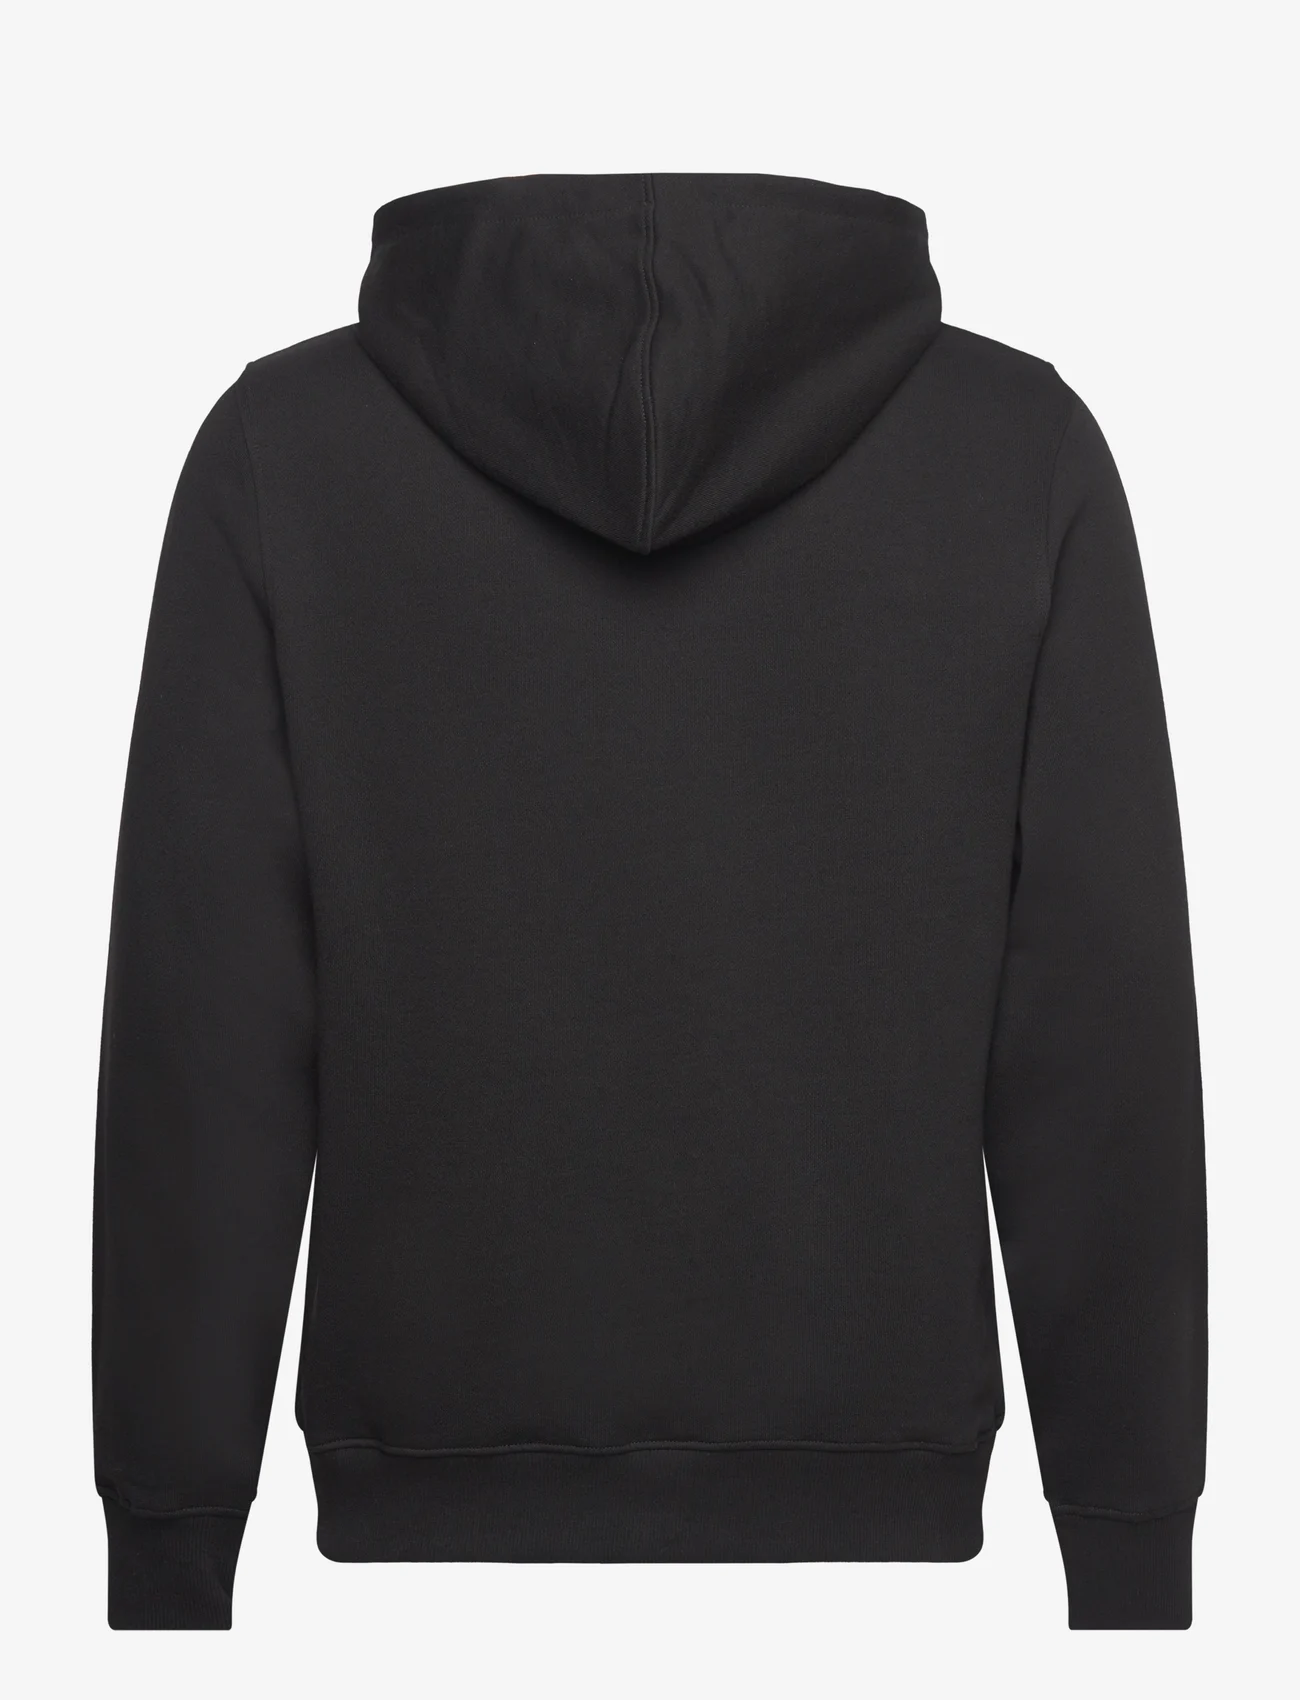 Daily Paper - rivo hoodie - hættetrøjer - black - 1